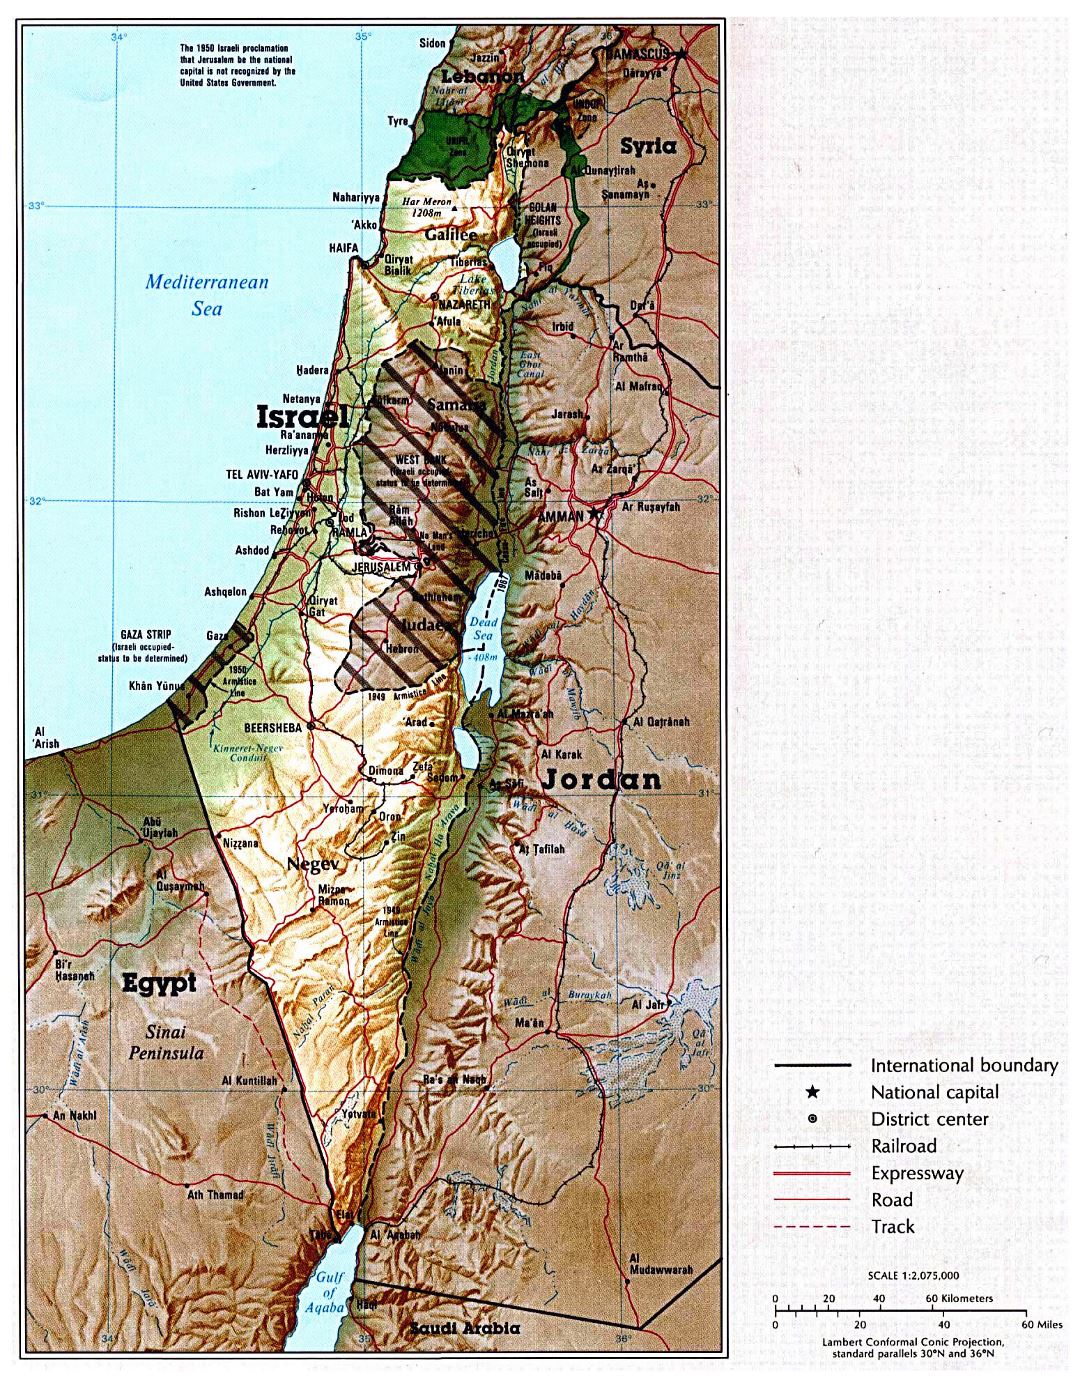 Grande mapa político de Israel con relieve, carreteras, ferrocarriles y grandes ciudades